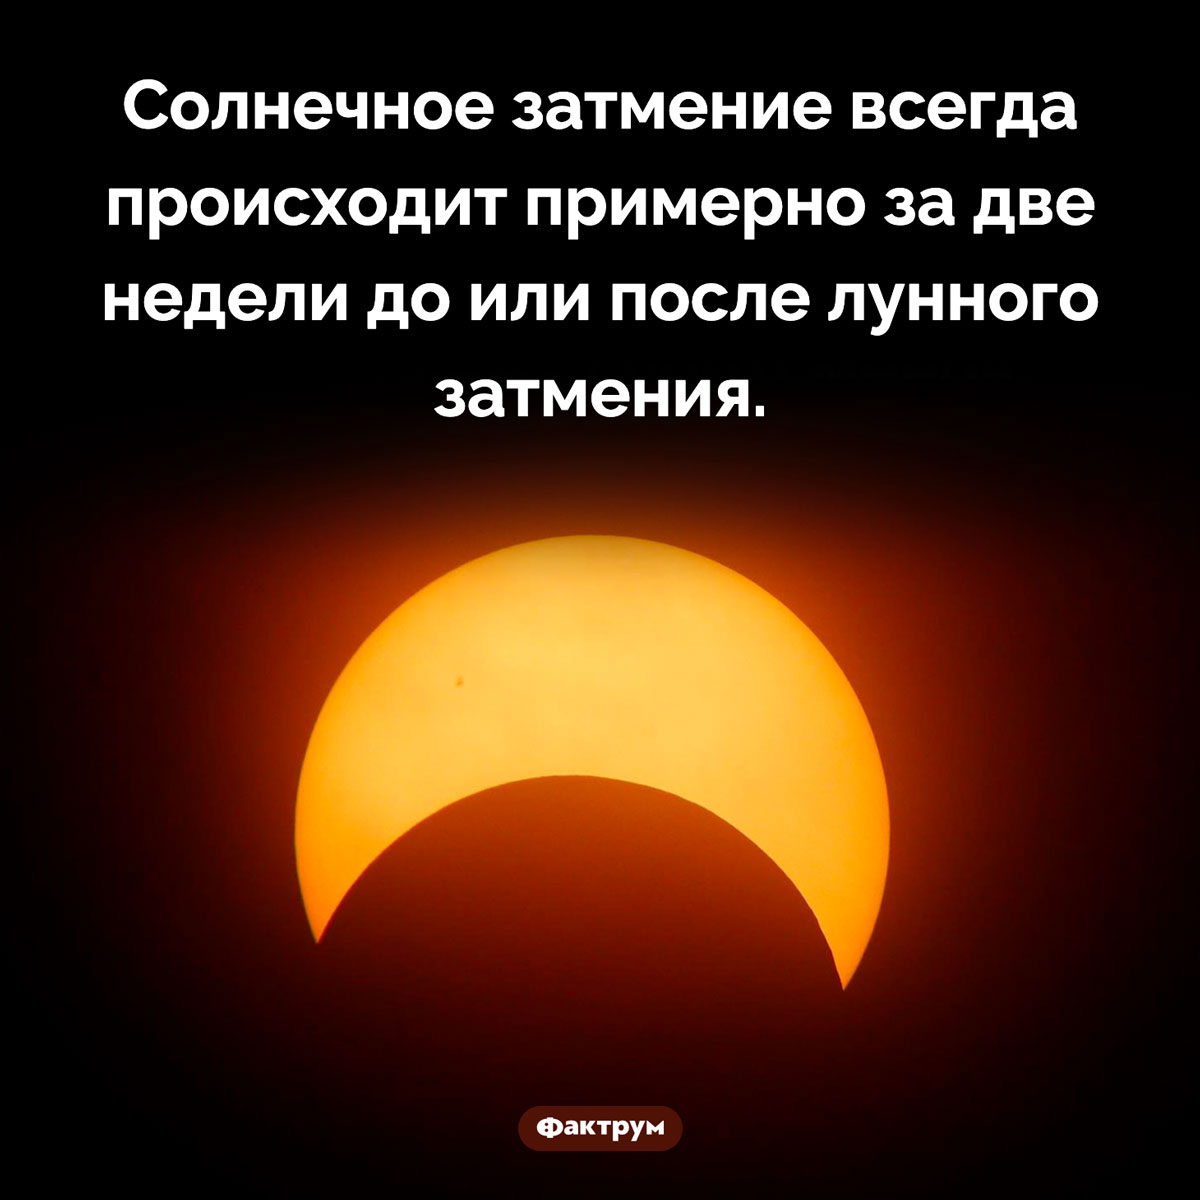 Затмение не приходит одно. Солнечное затмение всегда происходит примерно за две недели до или после лунного затмения.